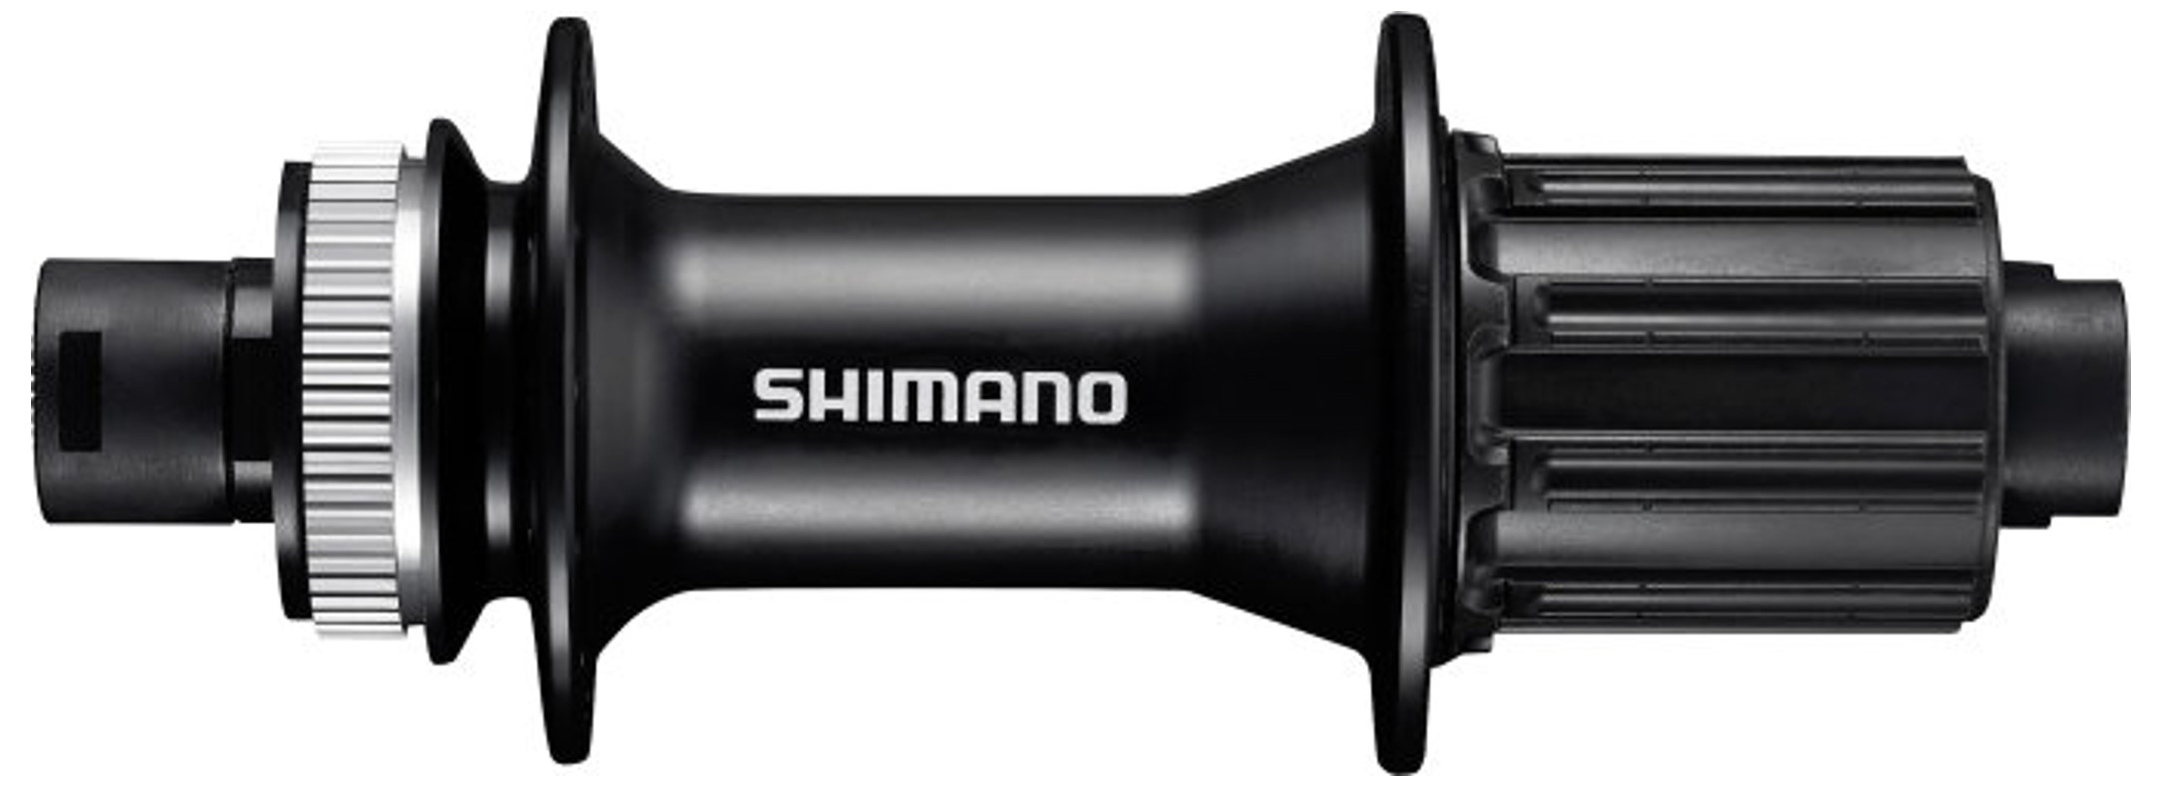  Втулка для велосипеда Shimano MT400-B 8-11ск., 36отв. (EFHMT400BA)